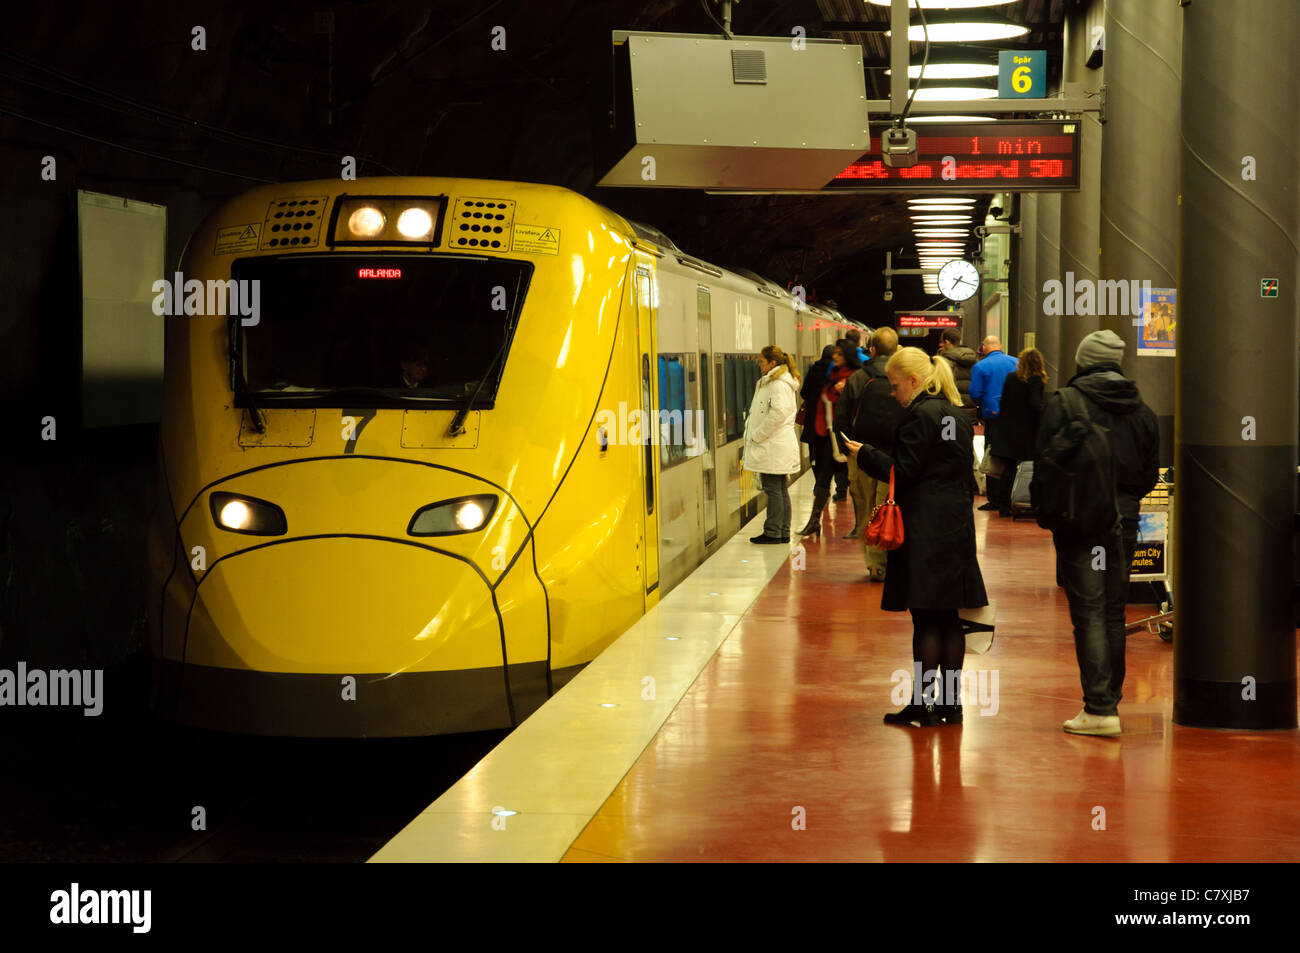 Train à grande vitesse dans le métro Gare de l'aéroport ; la grande vitesse ferroviaire ; transport public transport de voyageurs rapide ; Banque D'Images